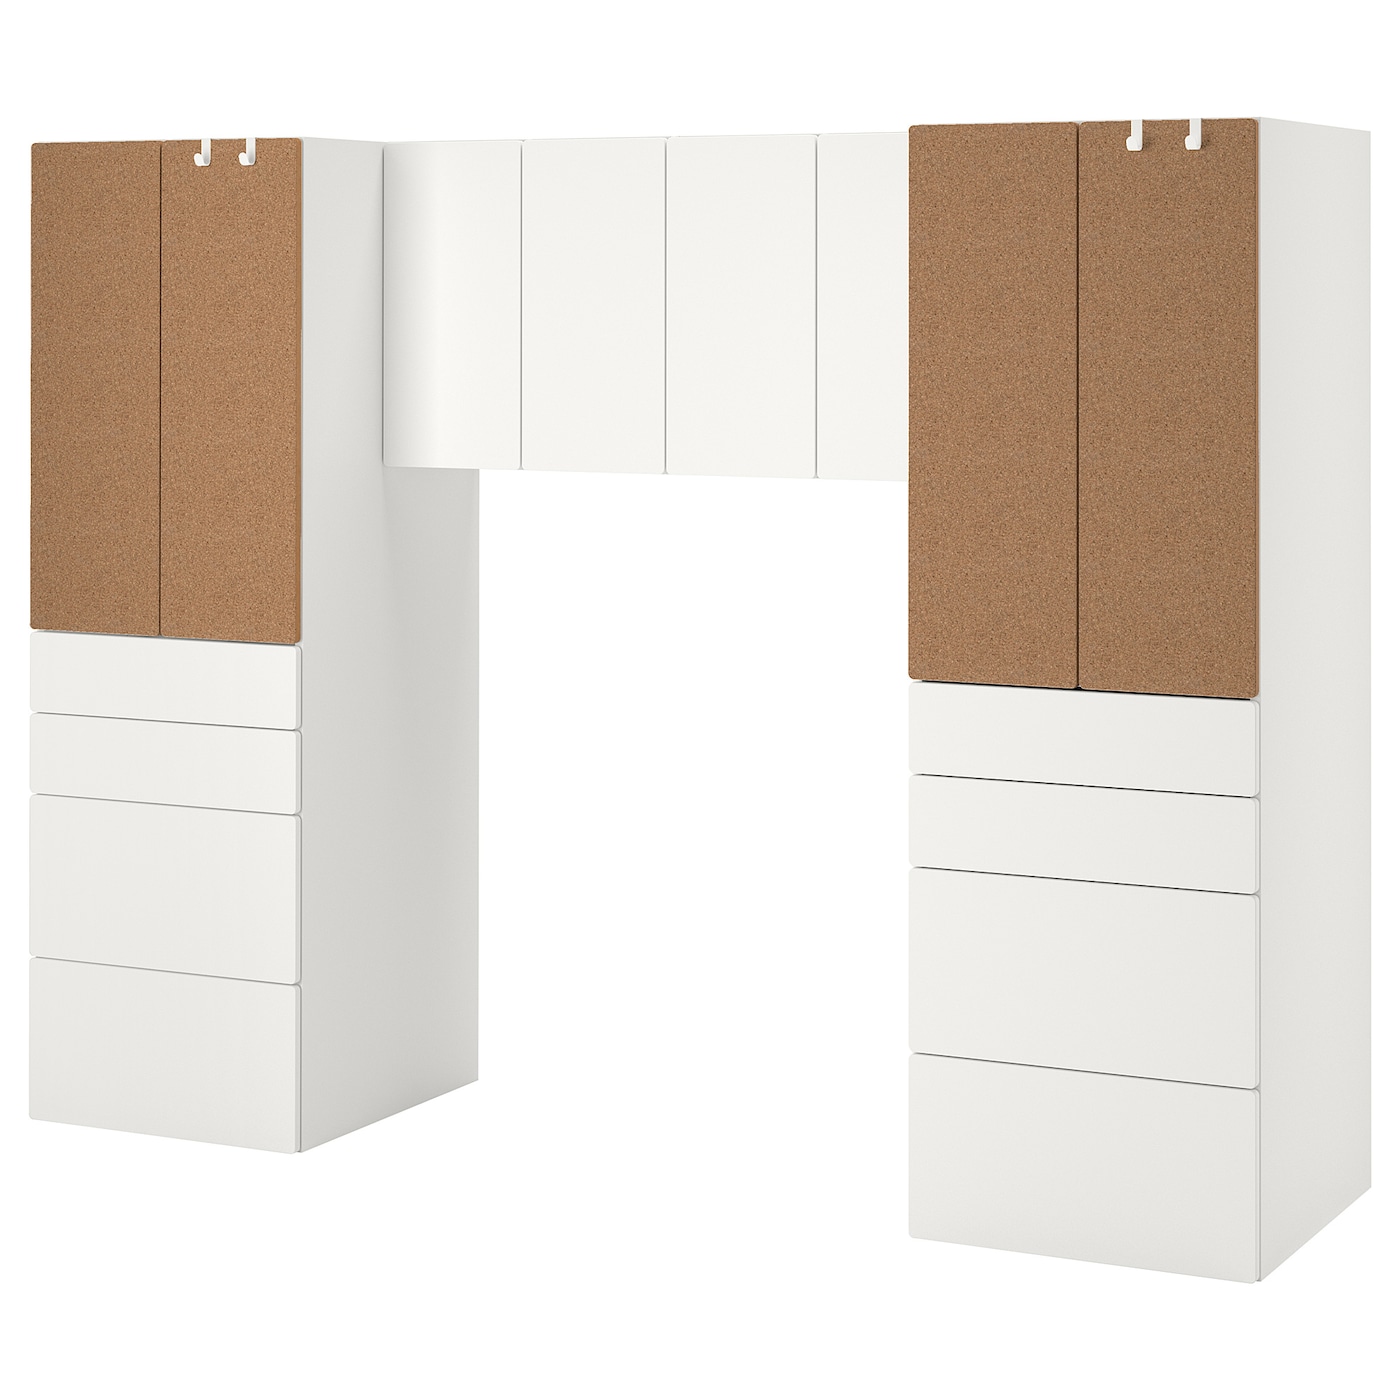 Детская гардеробная комбинация - IKEA PLATSA SMÅSTAD/SMASTAD, 181x57x240см, белый/коричневый, ПЛАТСА СМОСТАД ИКЕА